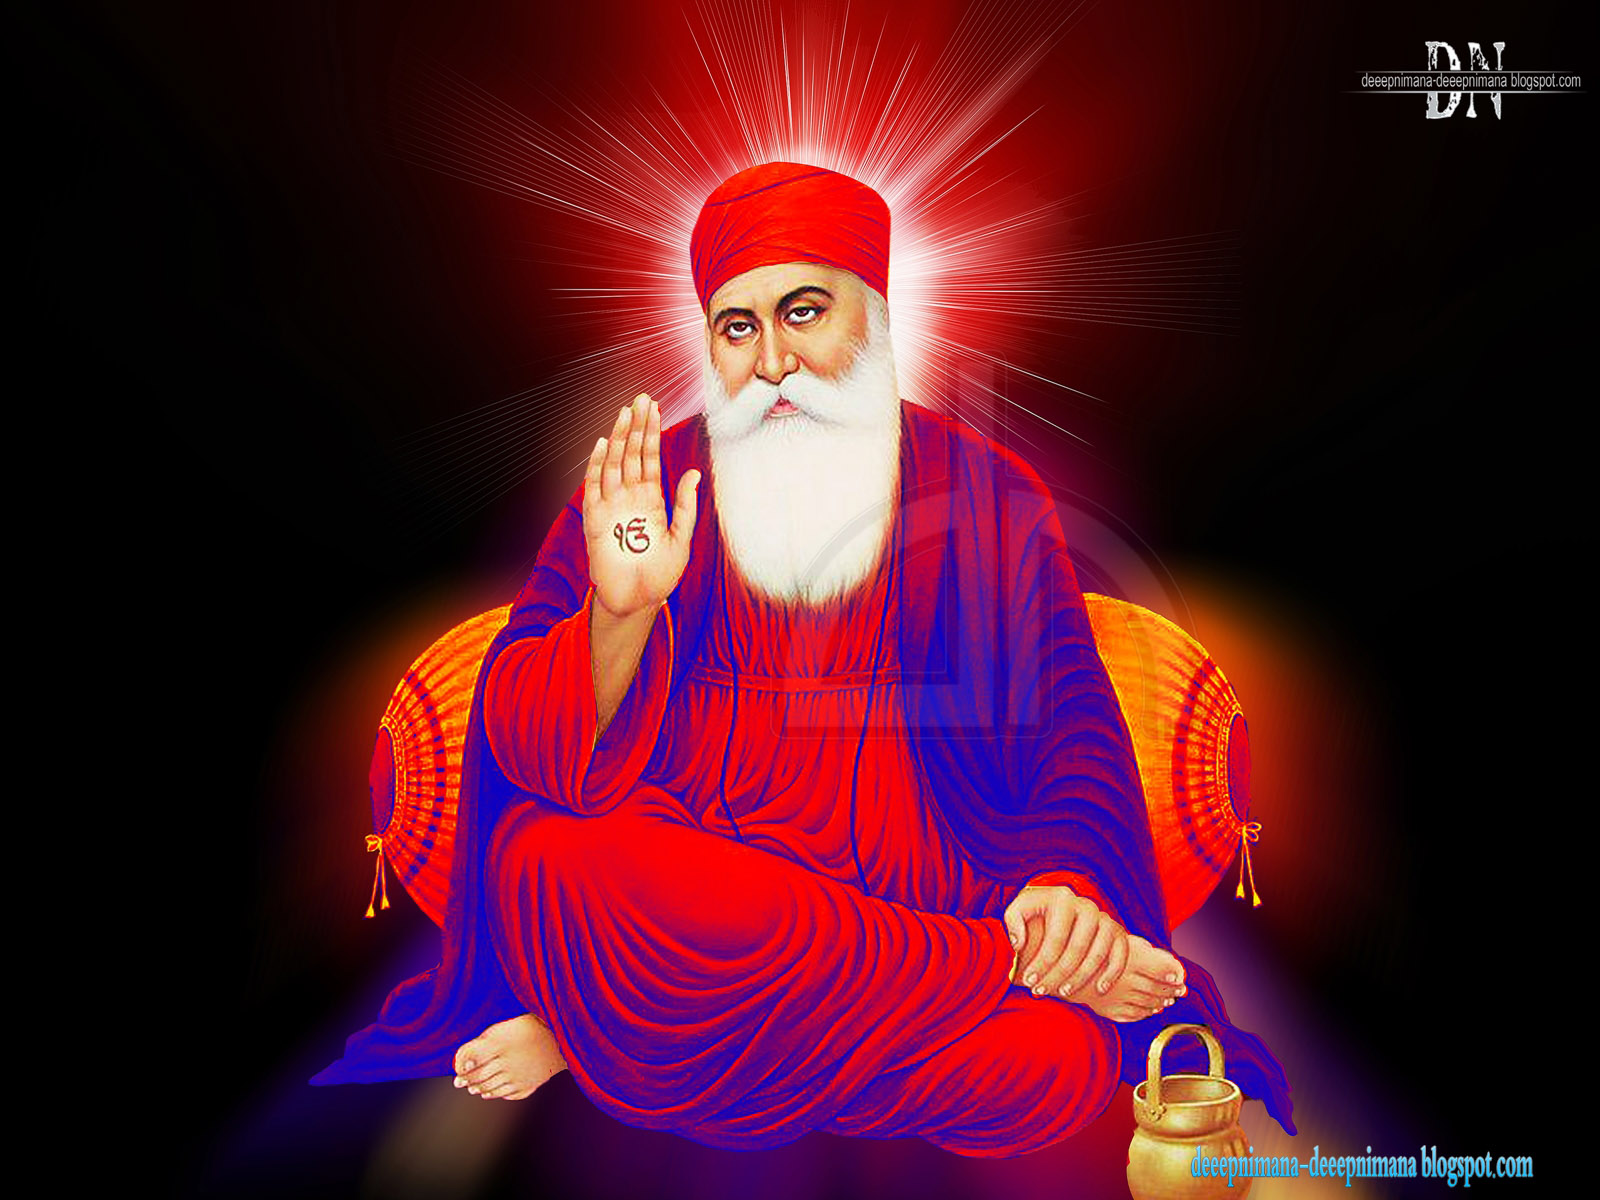 Deeepnimana Spot Guru Nanak Dev Ji